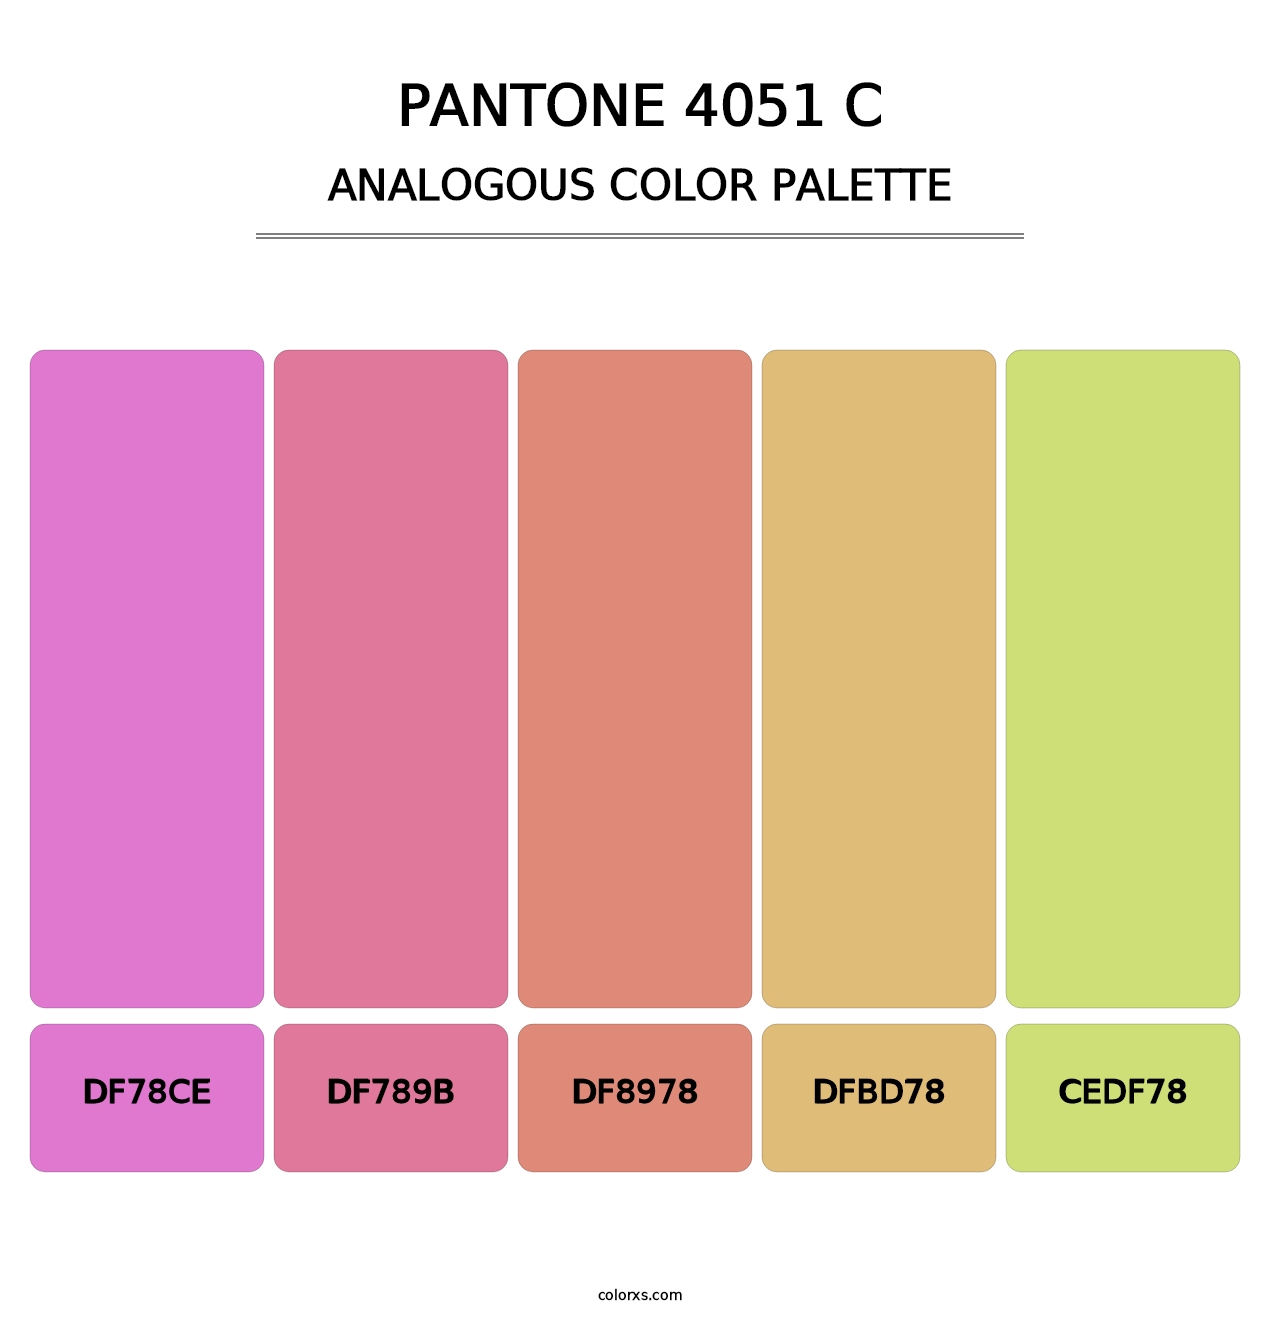 PANTONE 4051 C - Analogous Color Palette